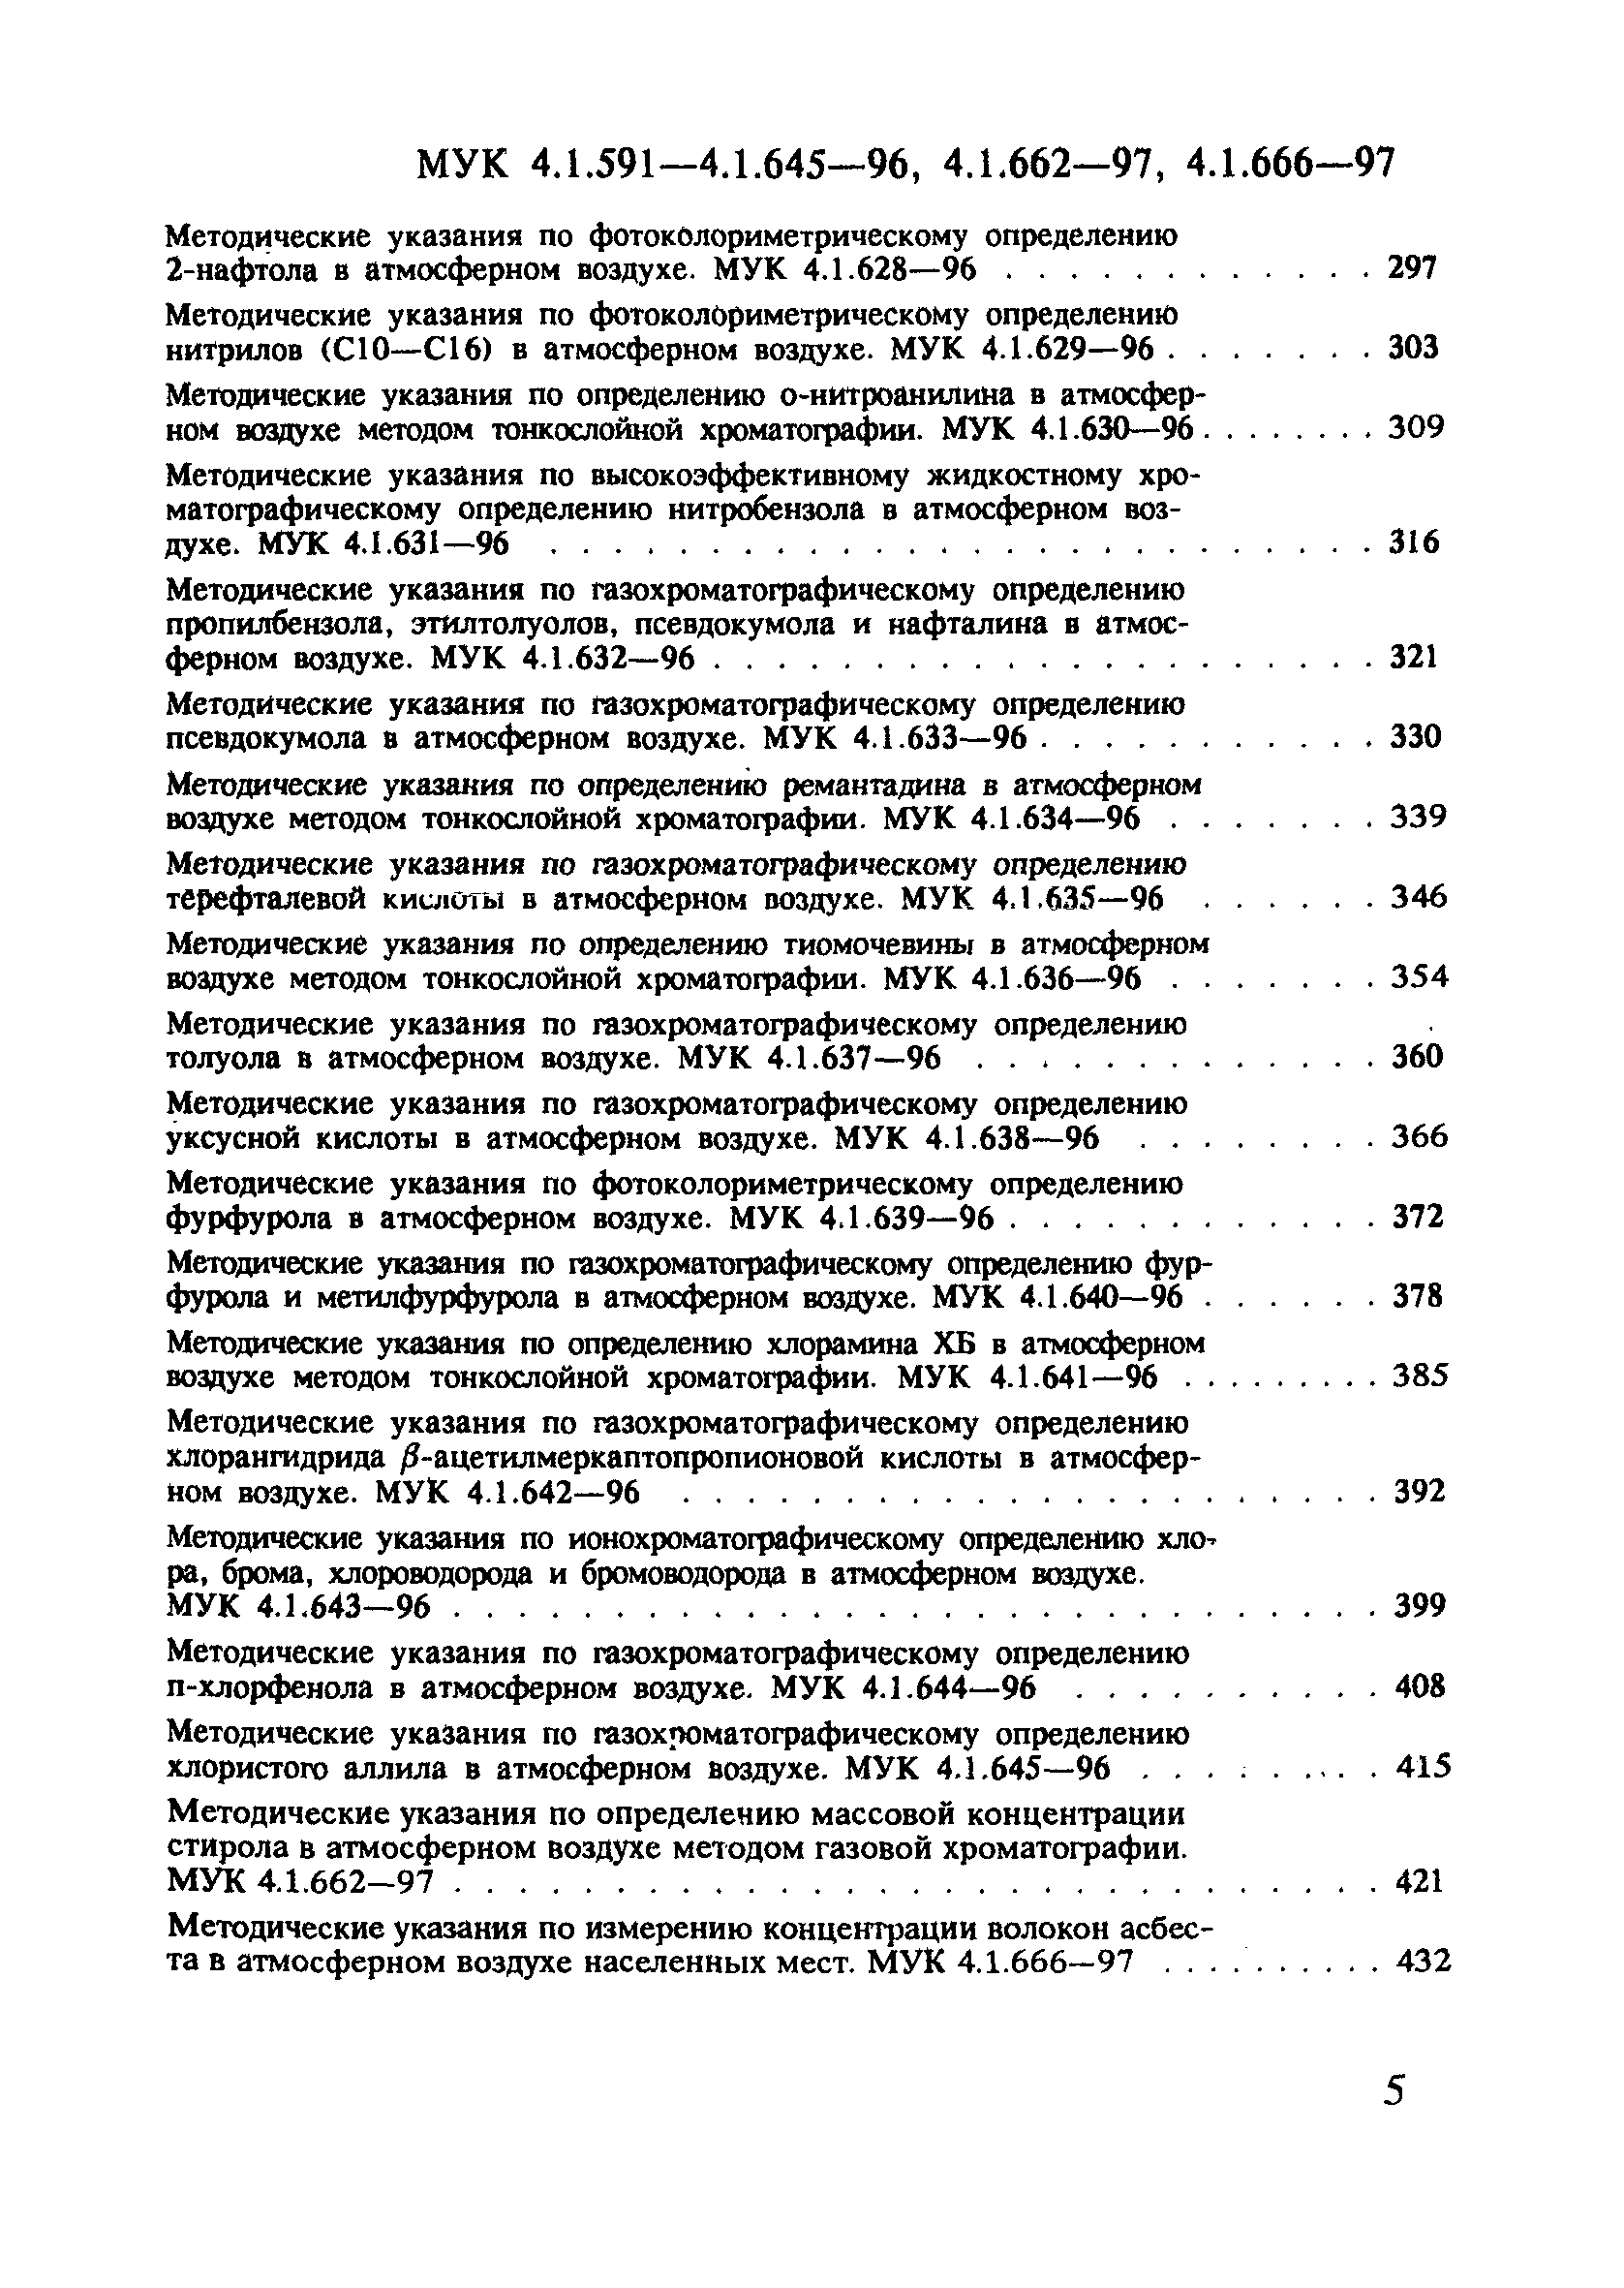 МУК 4.1.614-96